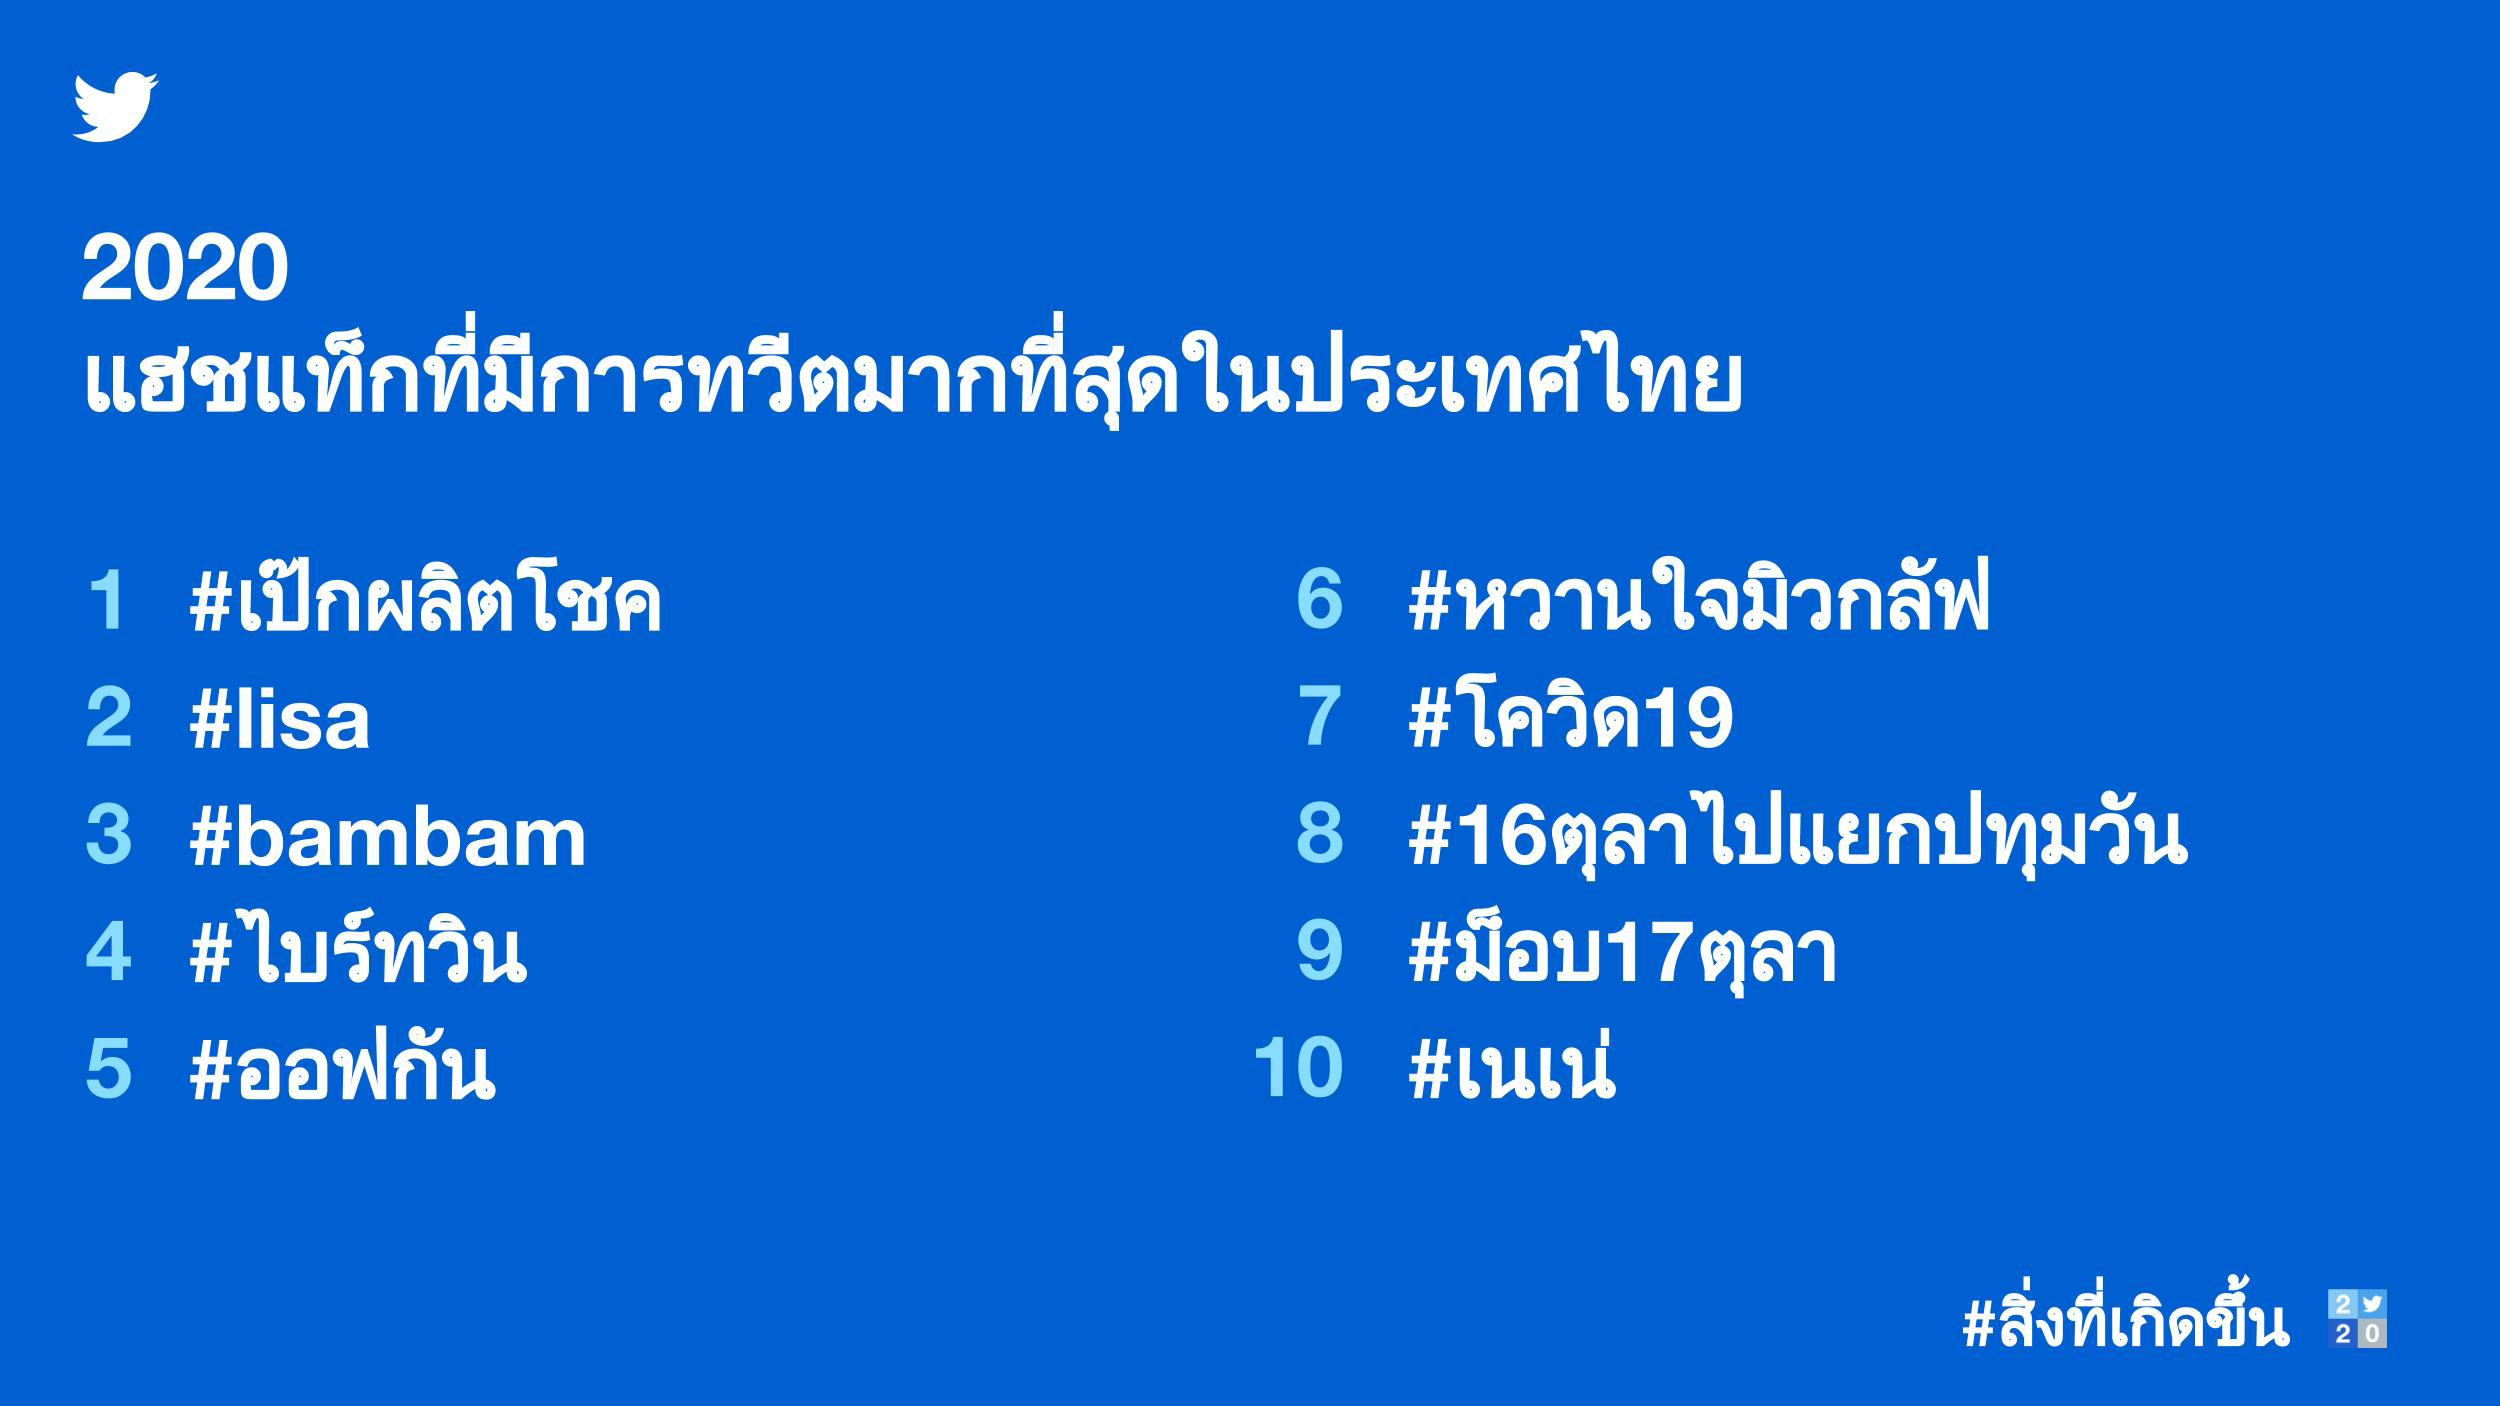 แฮชแท็กที่มีการทวีตมากที่สุดในไทย 2020